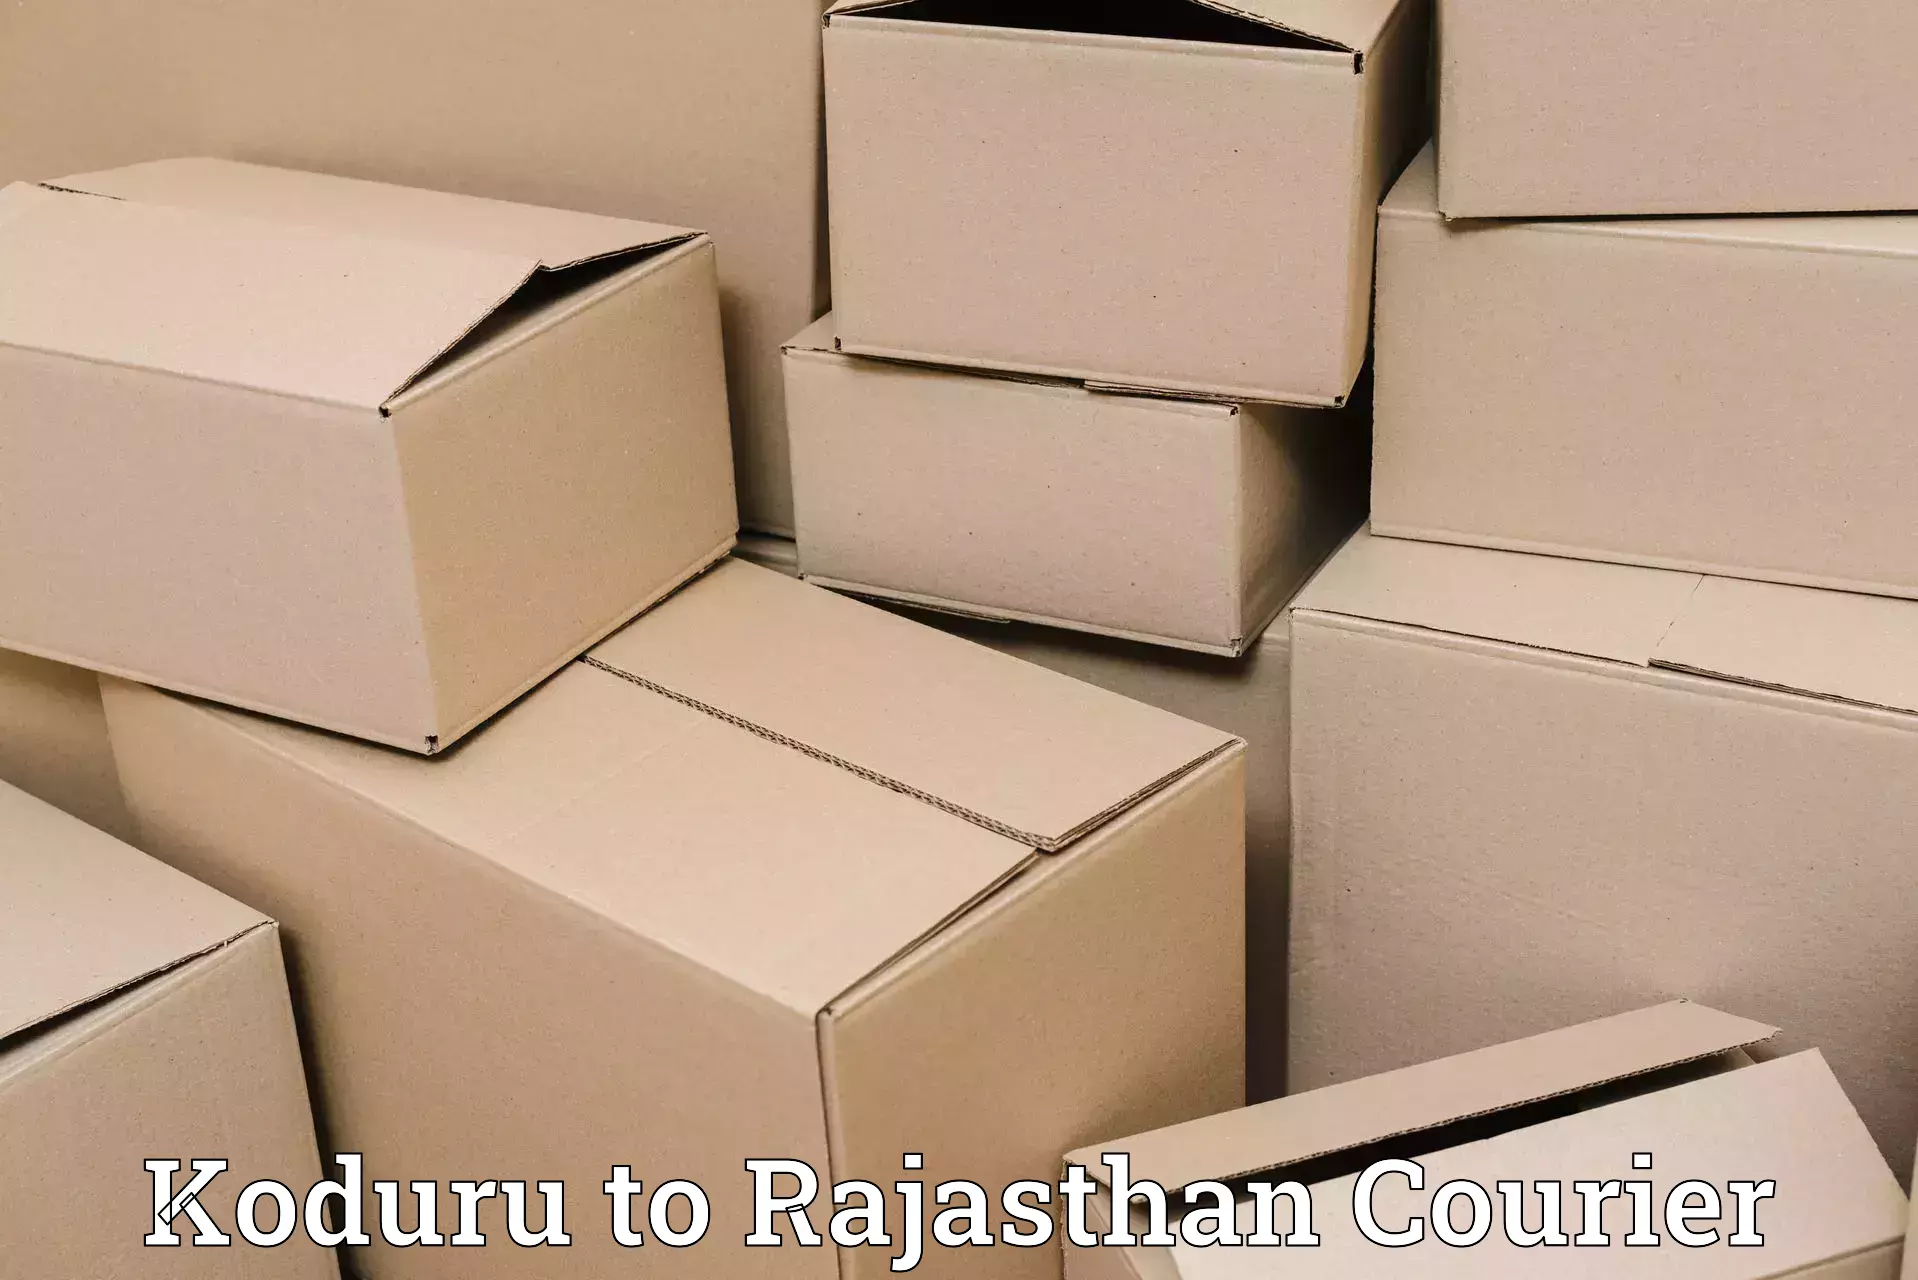 Express logistics providers Koduru to Rajasthan